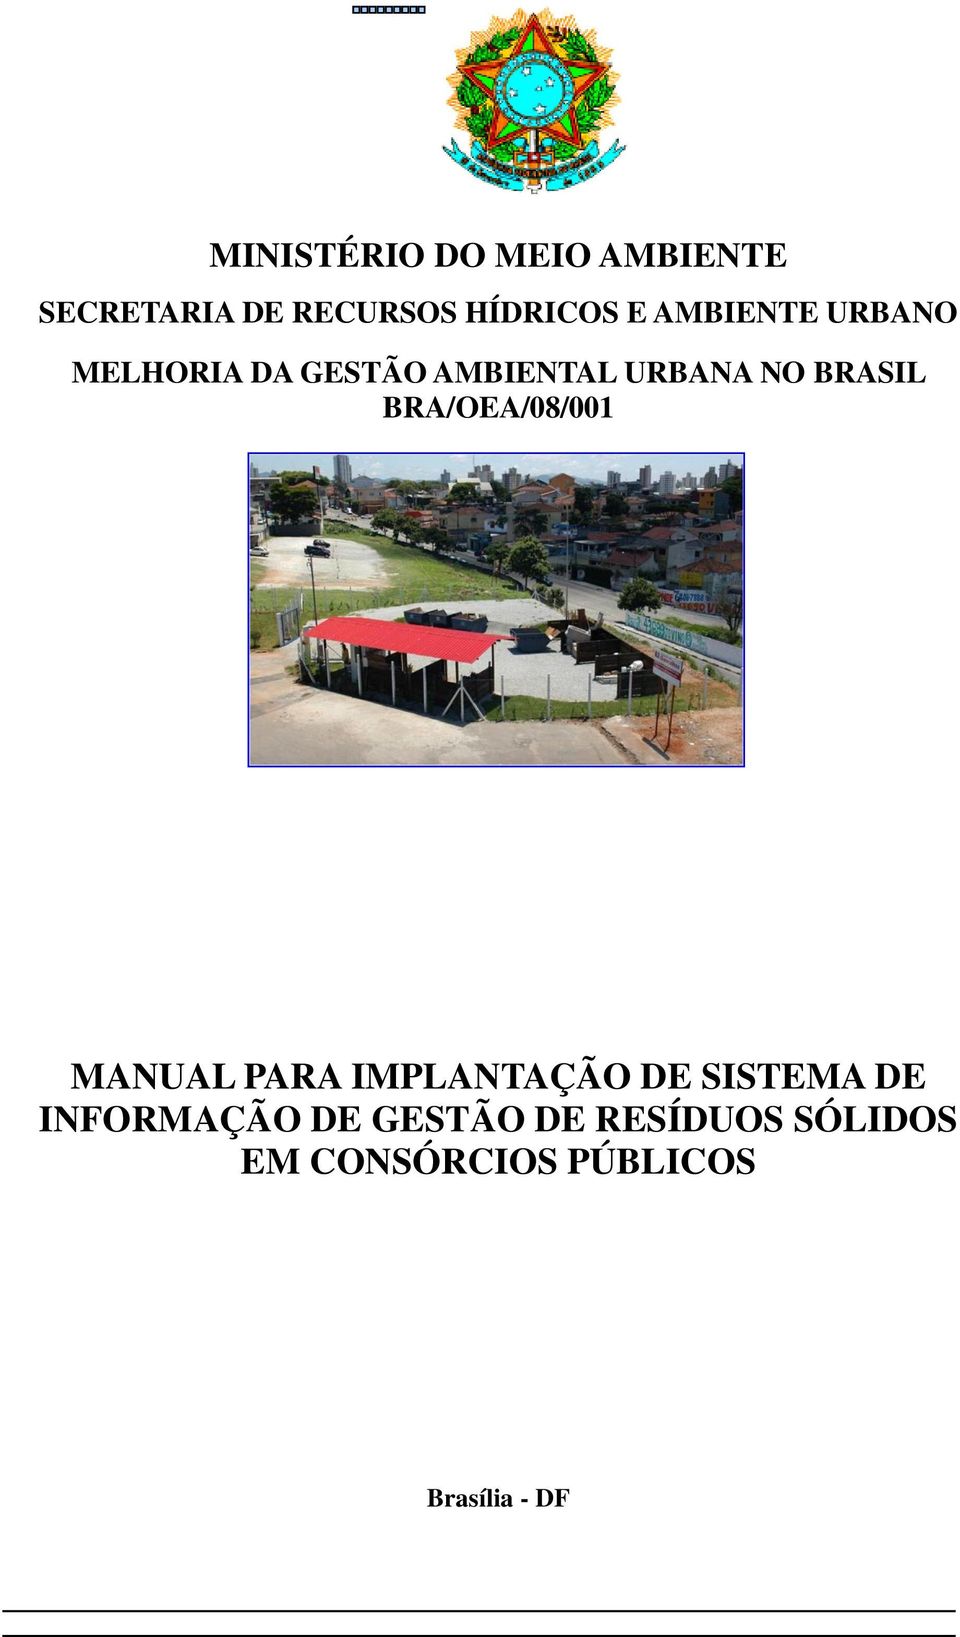 BRA/OEA/08/001 MANUAL PARA IMPLANTAÇÃO DE SISTEMA DE INFORMAÇÃO